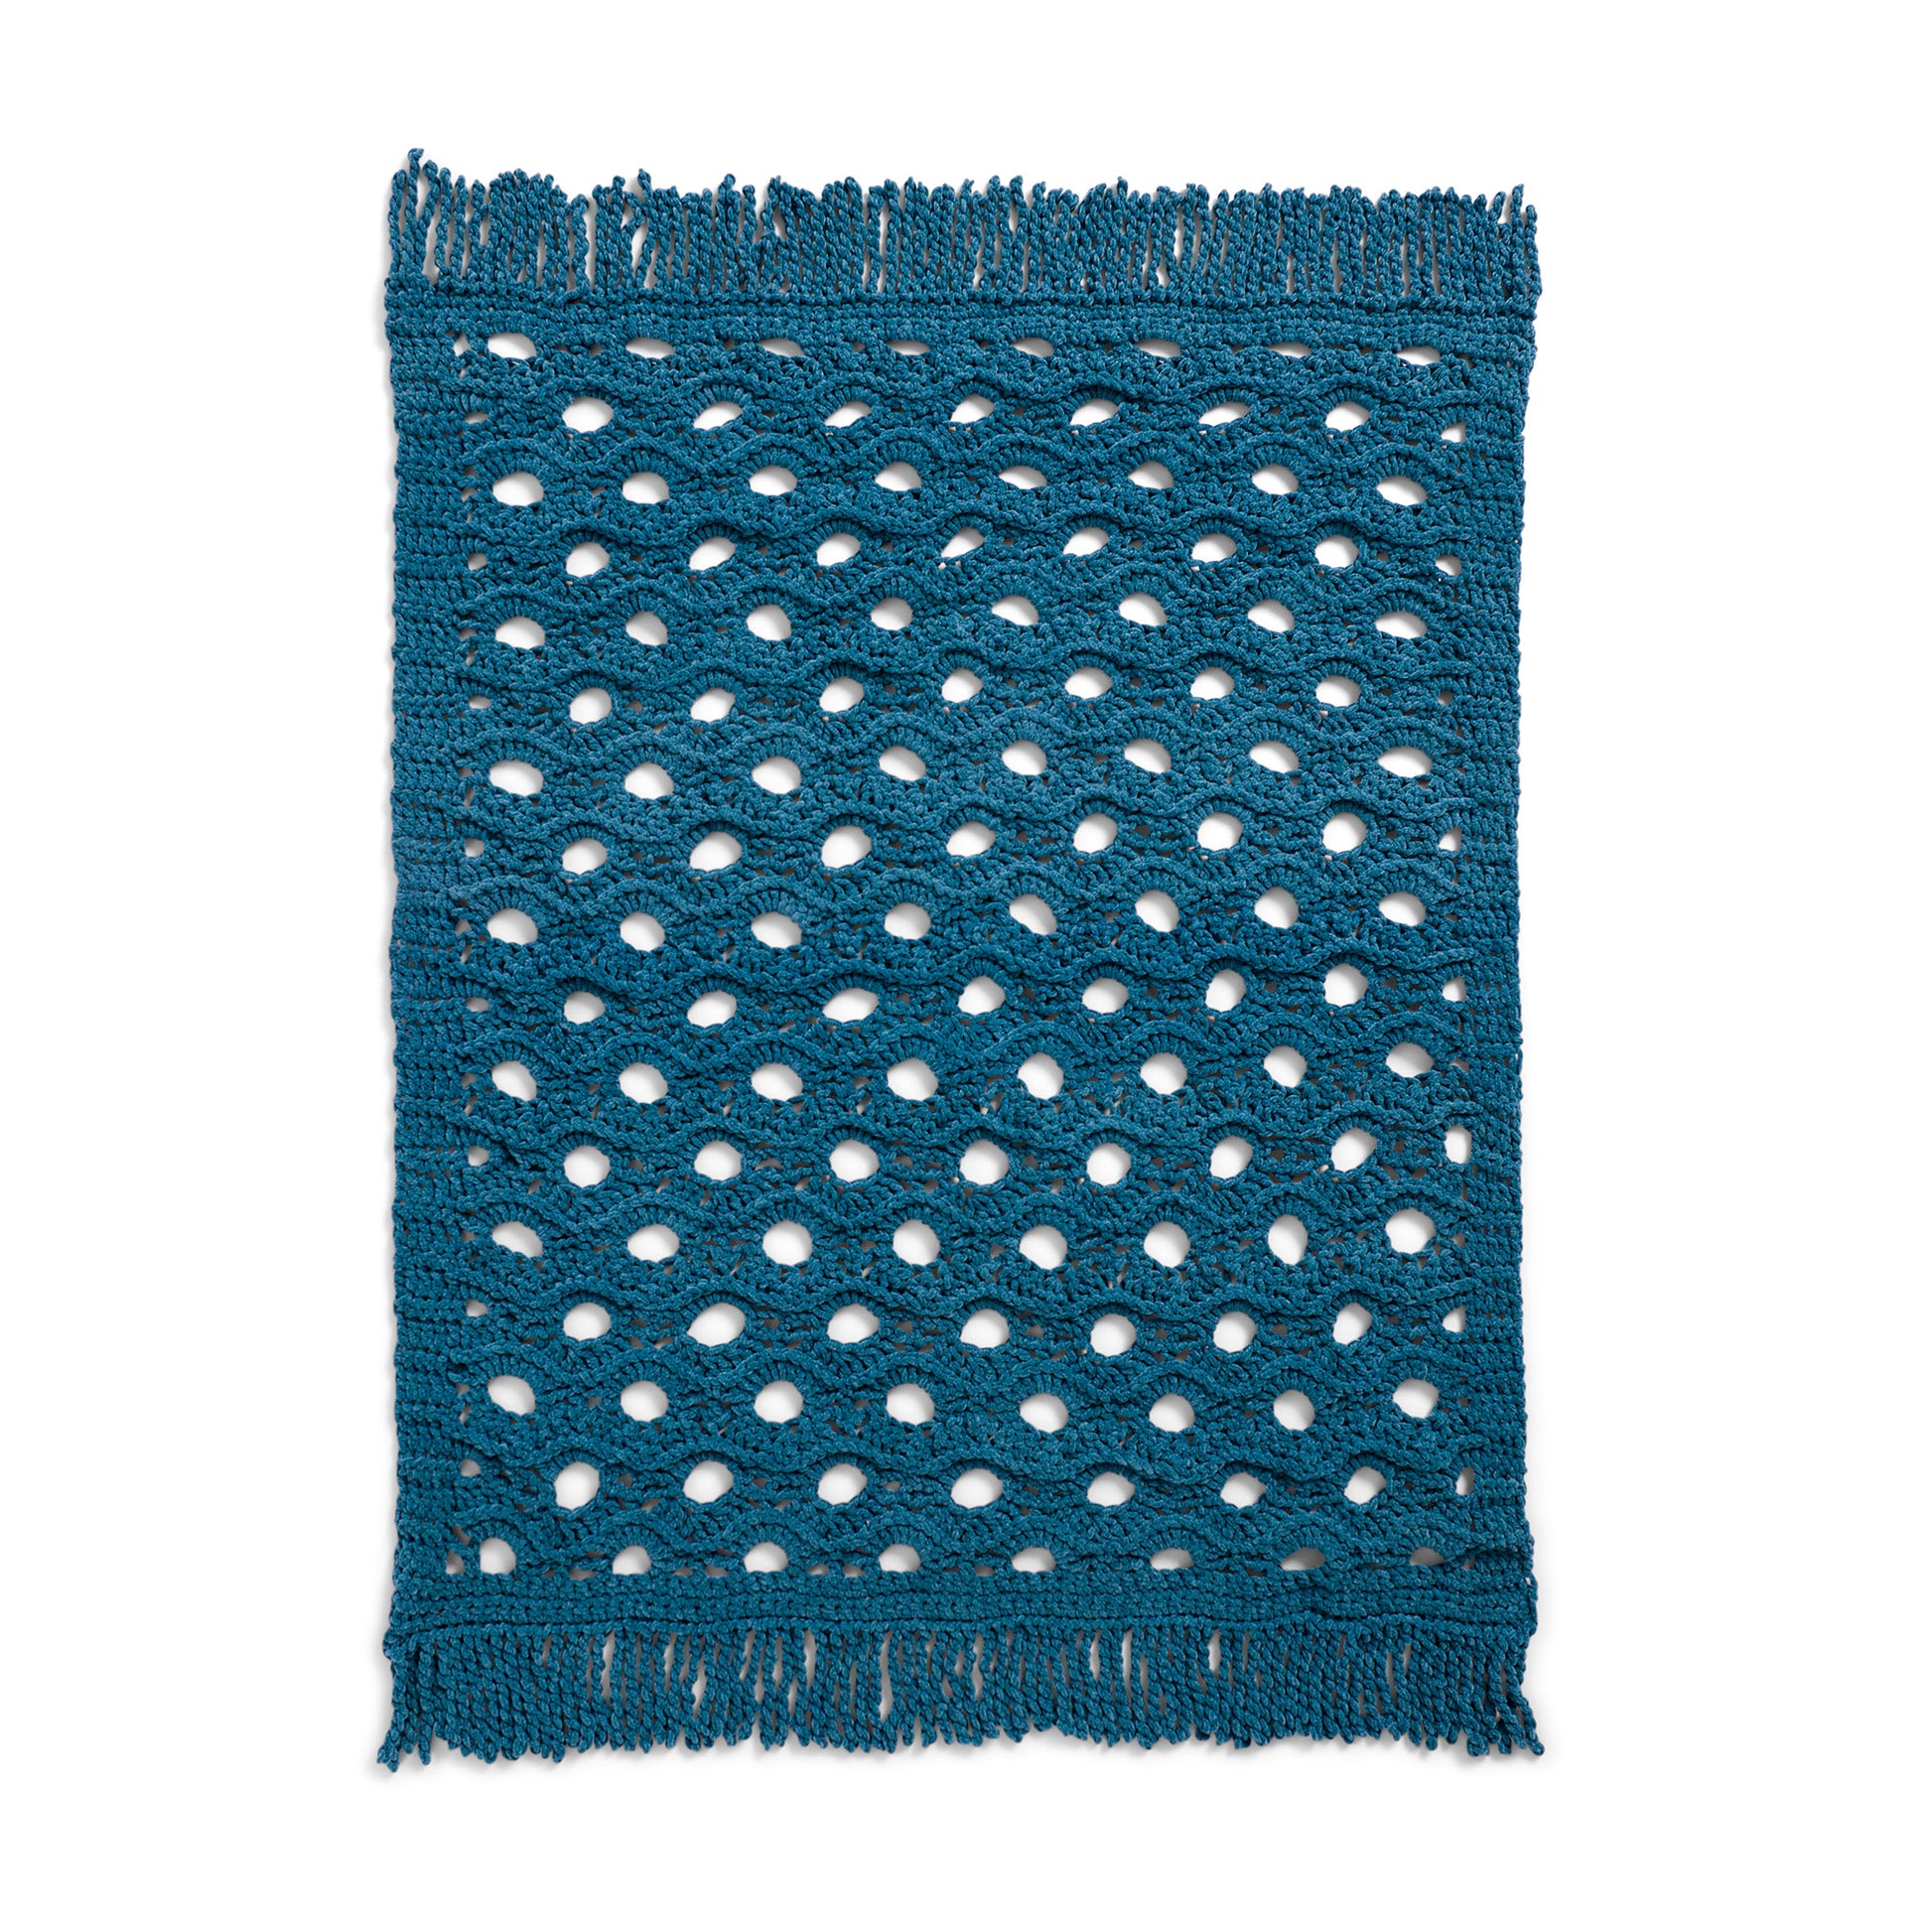 Free Bernat Open Flower Crochet Throw Blanket Pattern